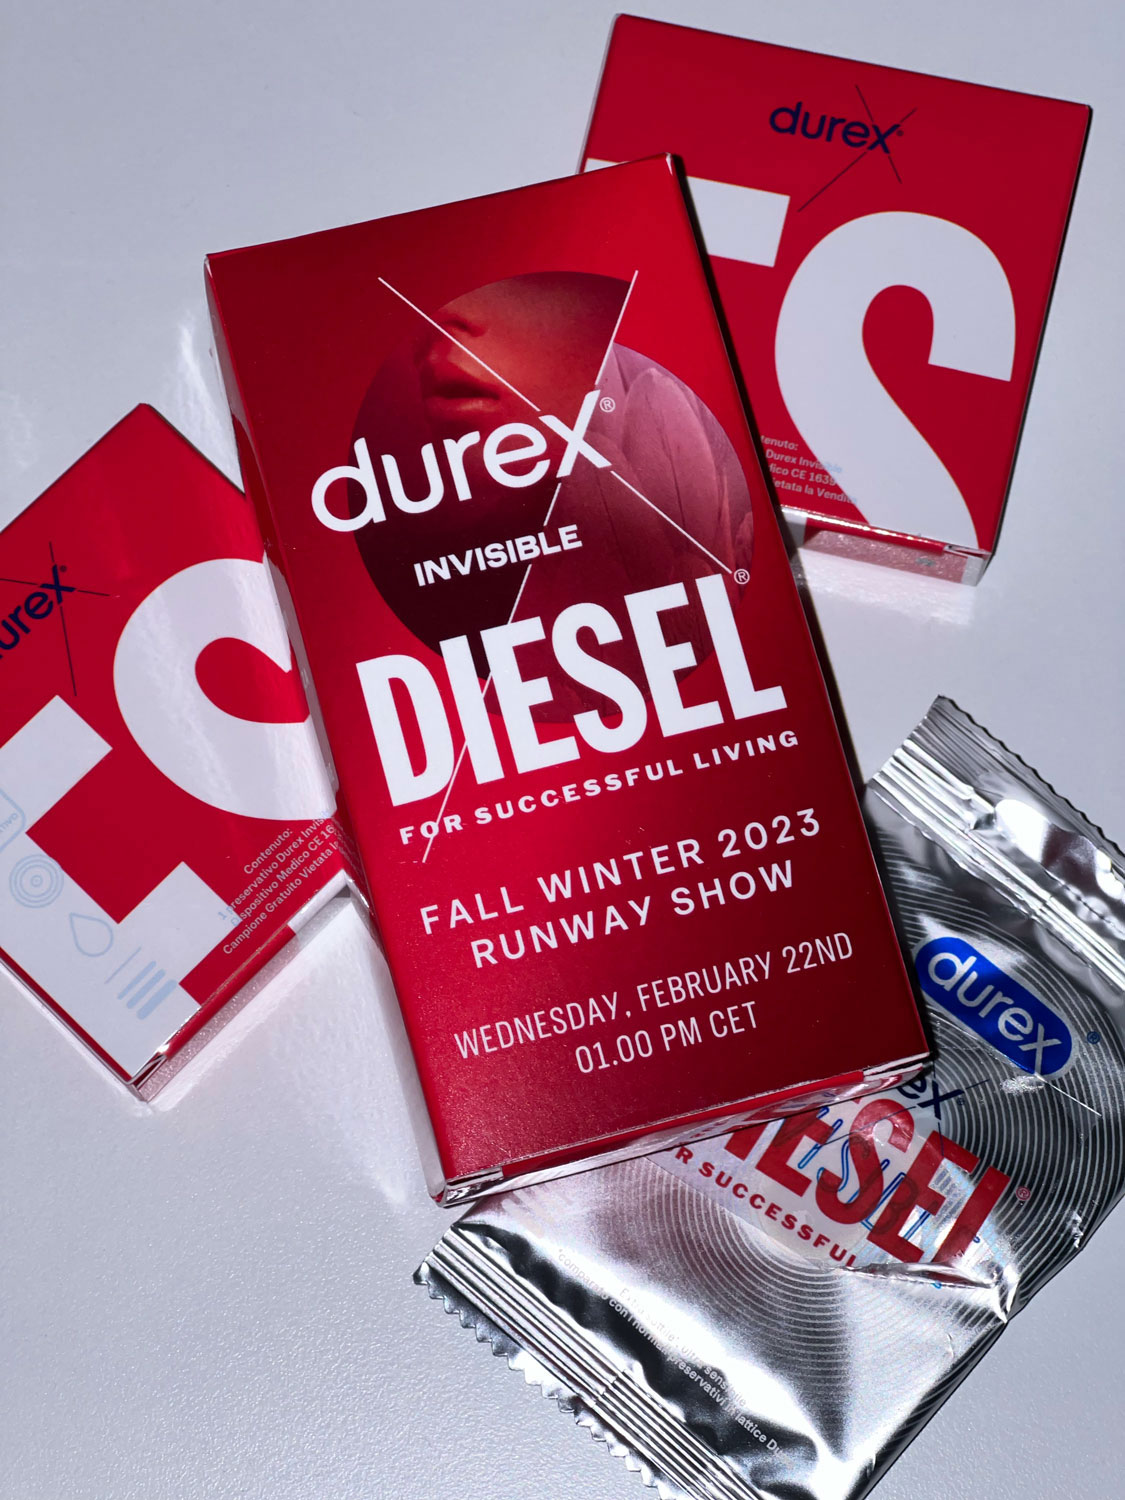 condom packaging by Durex and Diesel